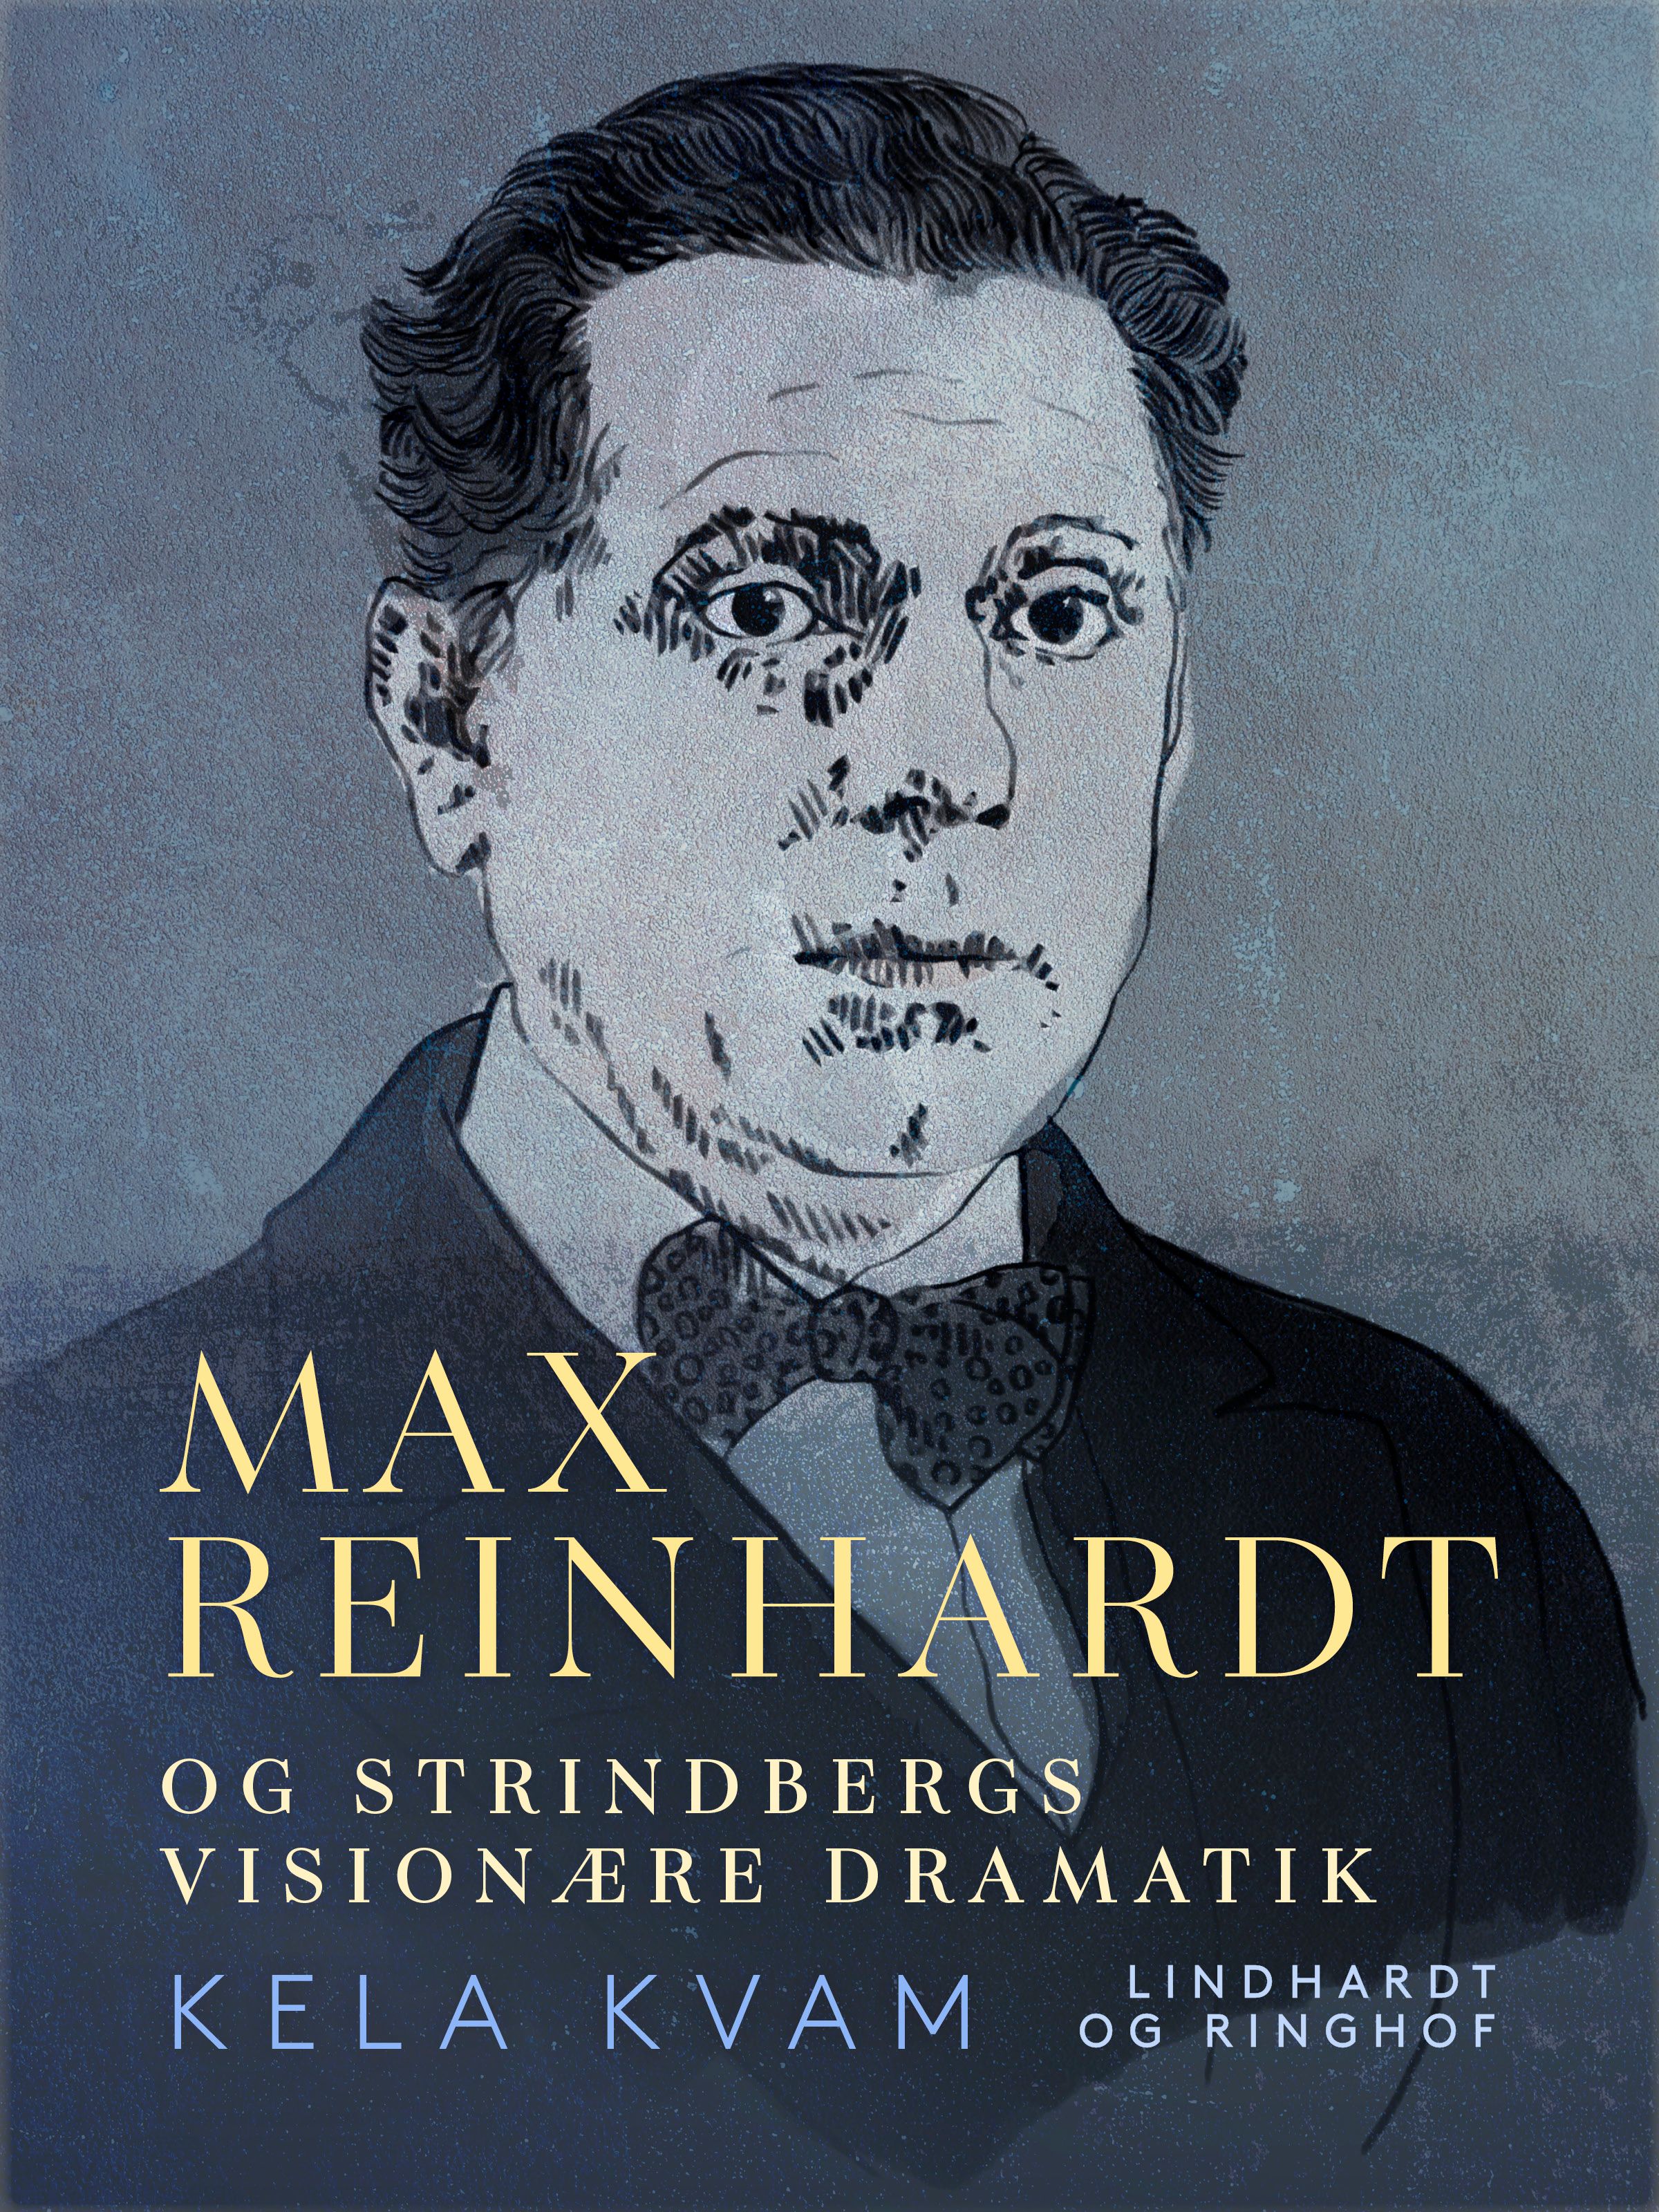 Max Reinhardt og Strindbergs visionære dramatik, e-bok av Kela Kvam